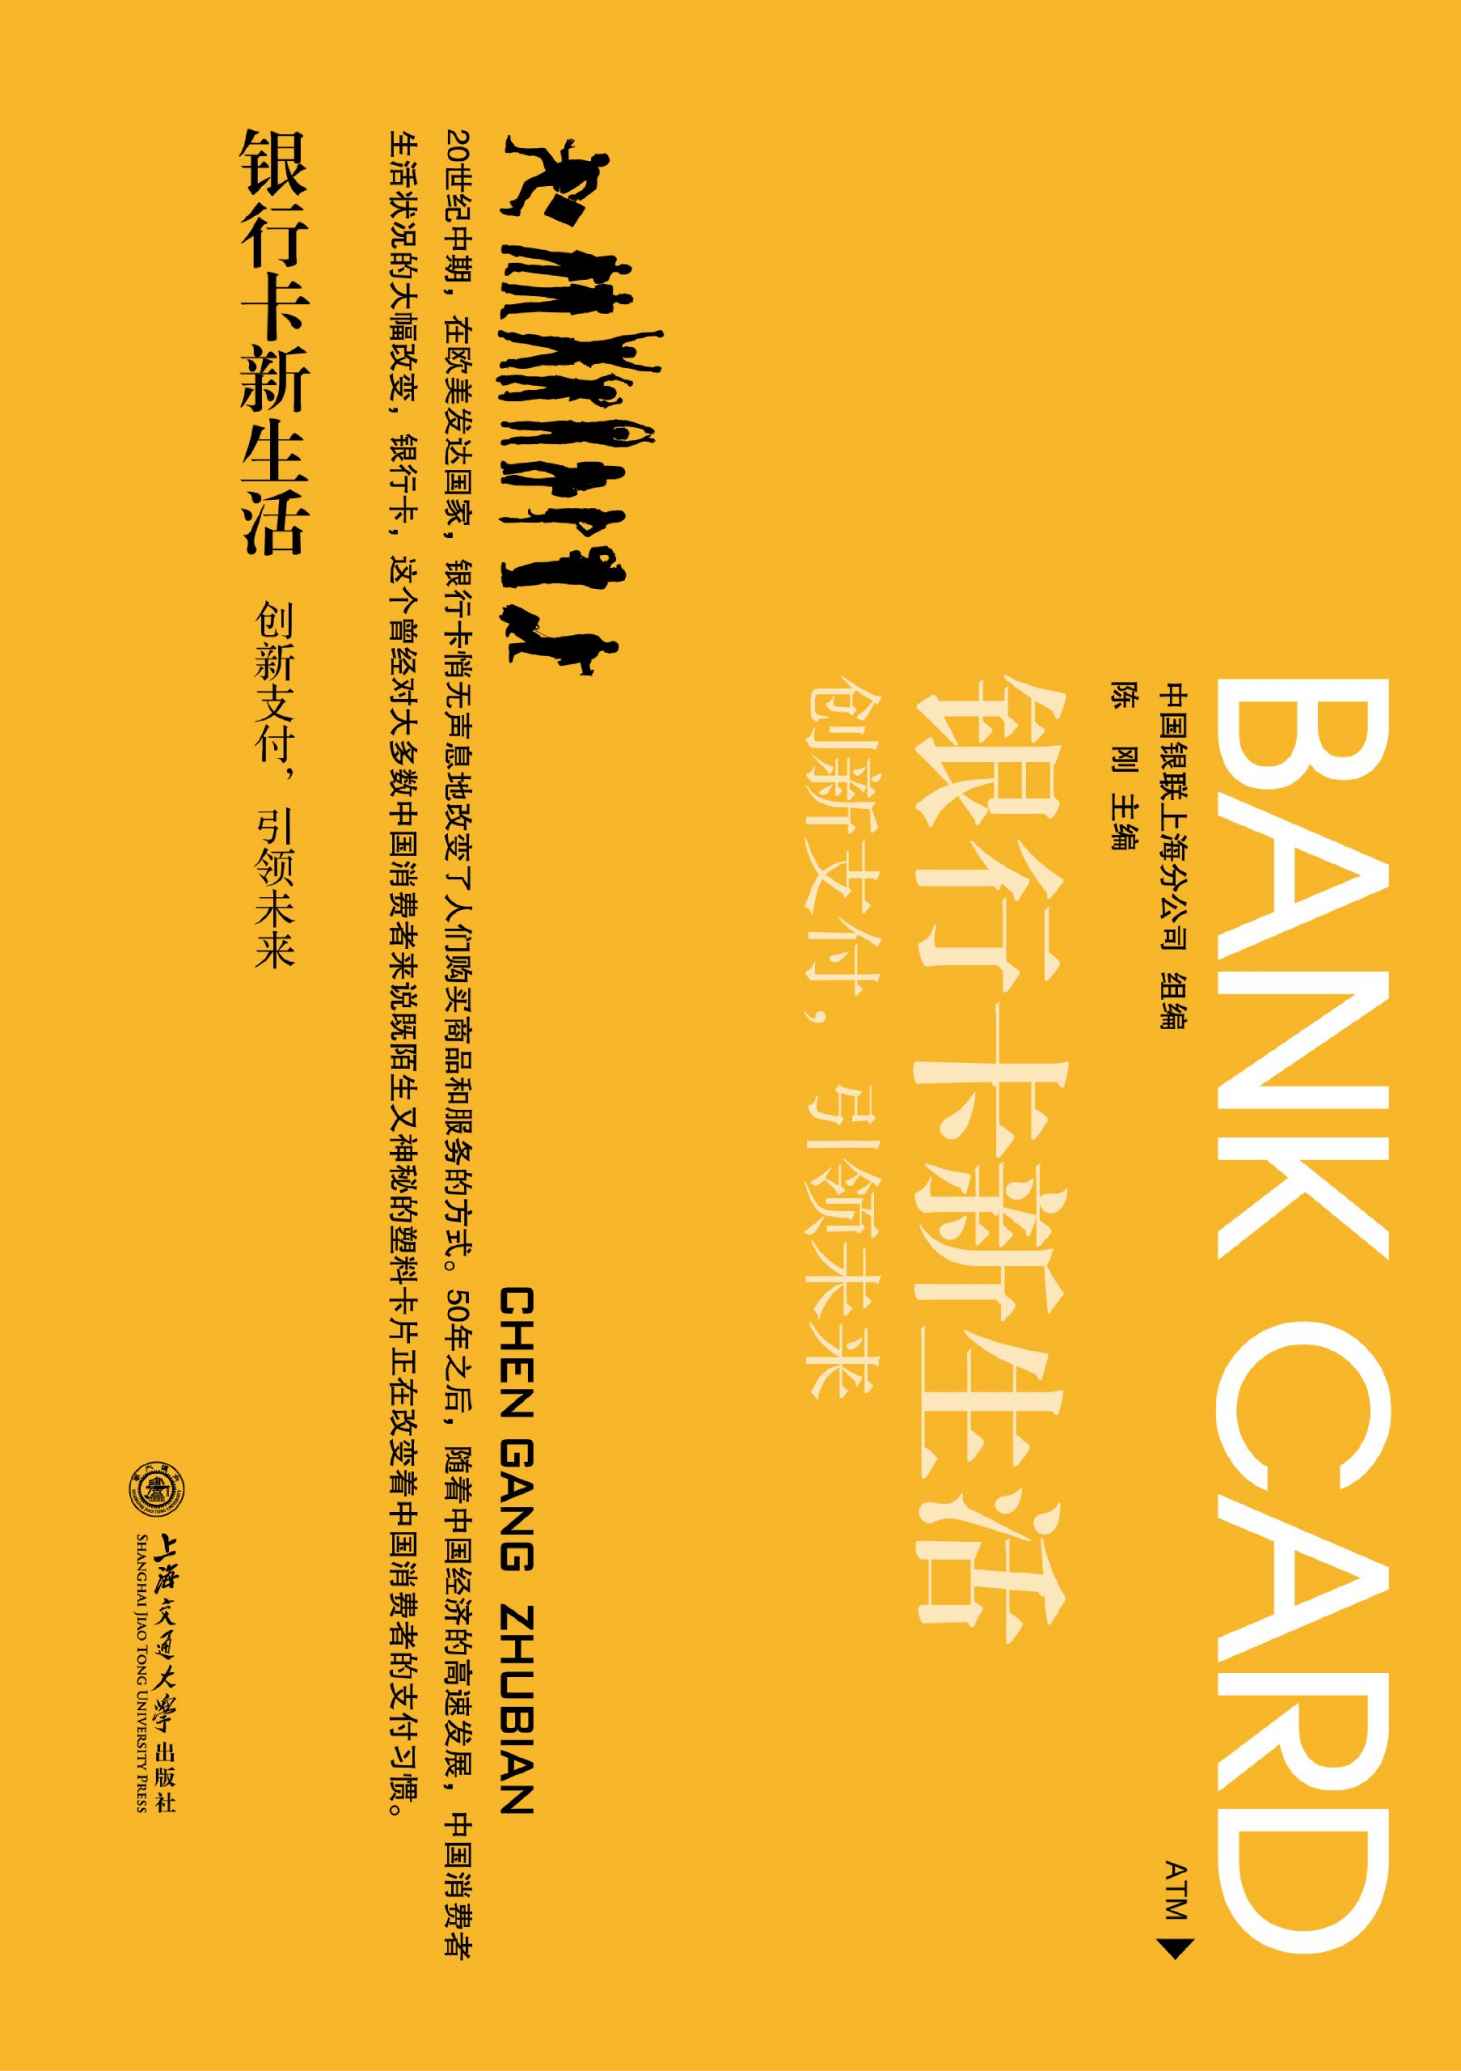 银行卡新生活:创新支付,引领未来